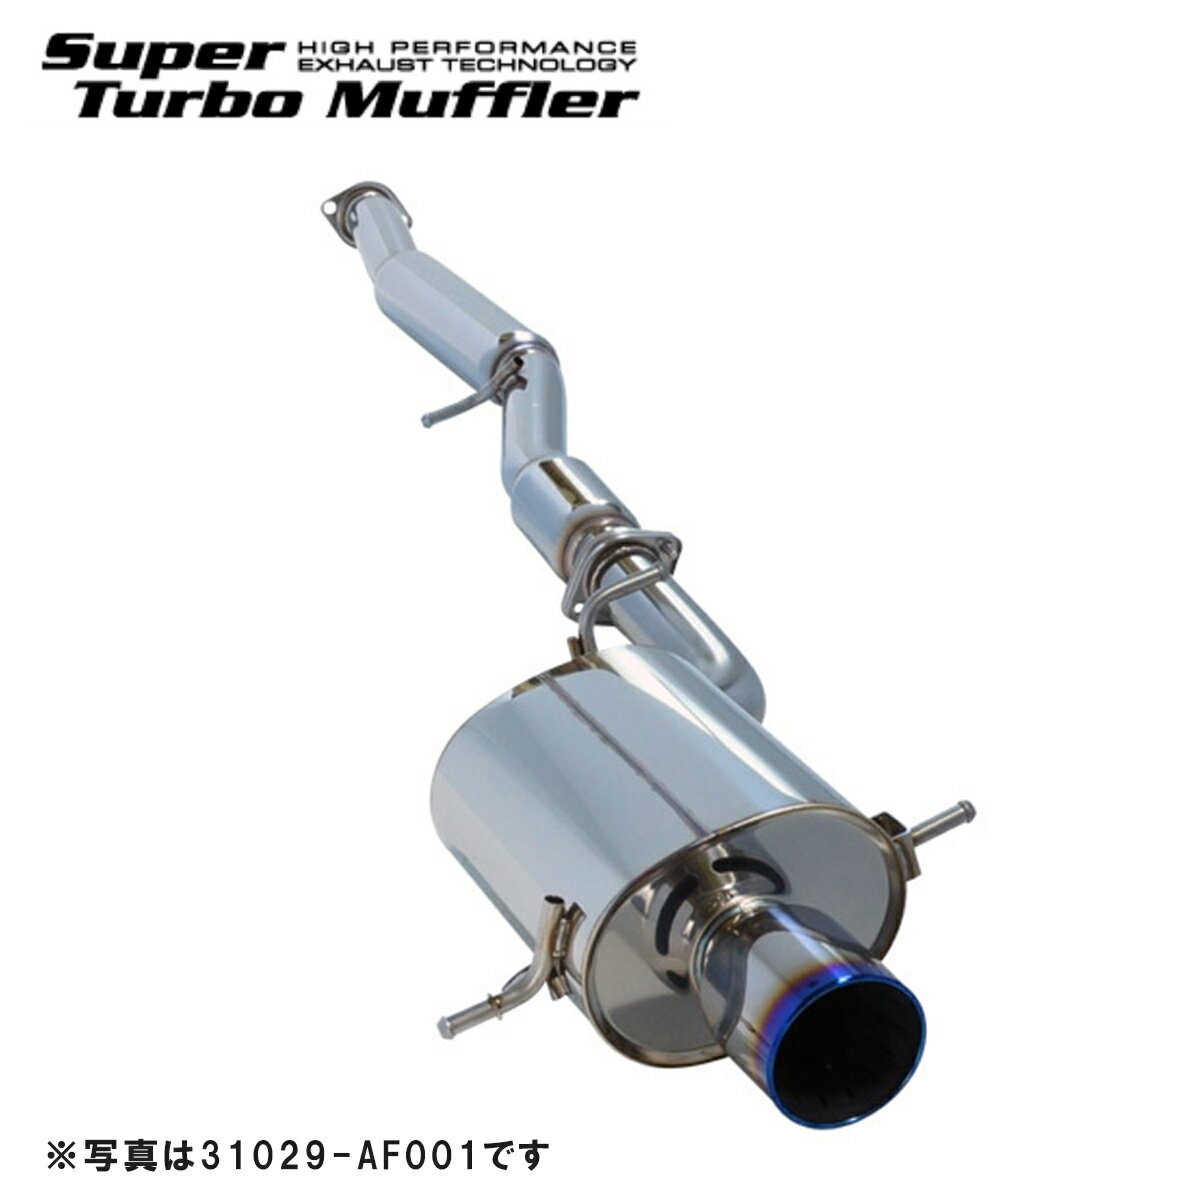 ジムニー JB23W マフラー SSR S304 31029-AS002 HKS Super Turbo Muffler スーパーターボマフラー